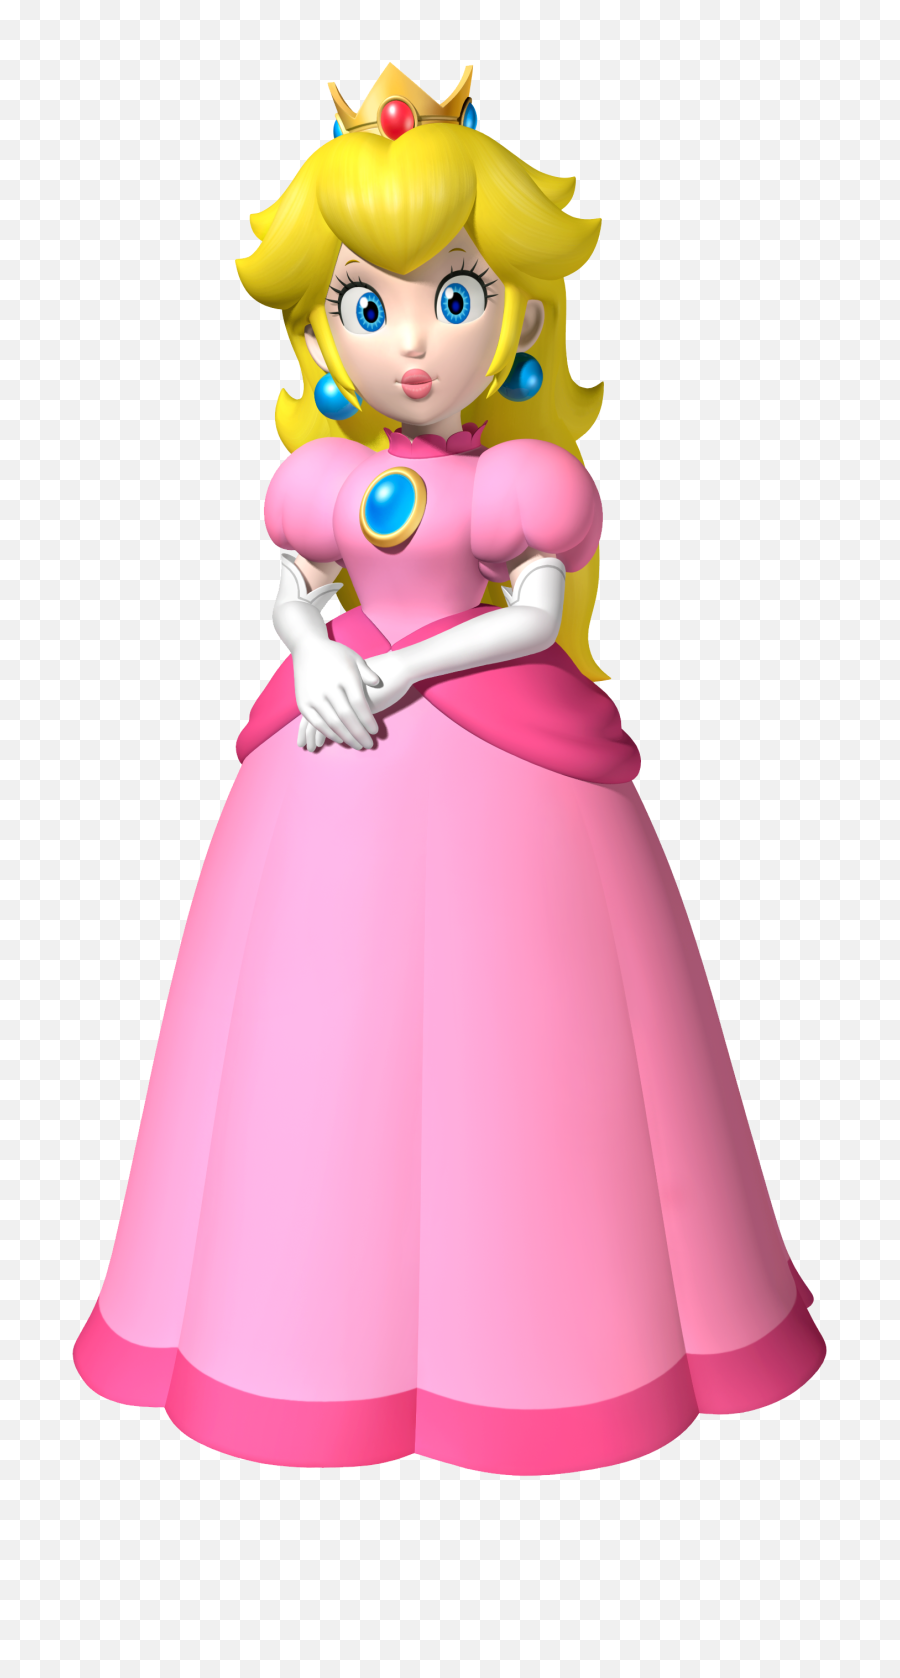 Princess Peach New Super Mario Bros - Princess Peach Costume Diy Png,Princess Peach Transparent